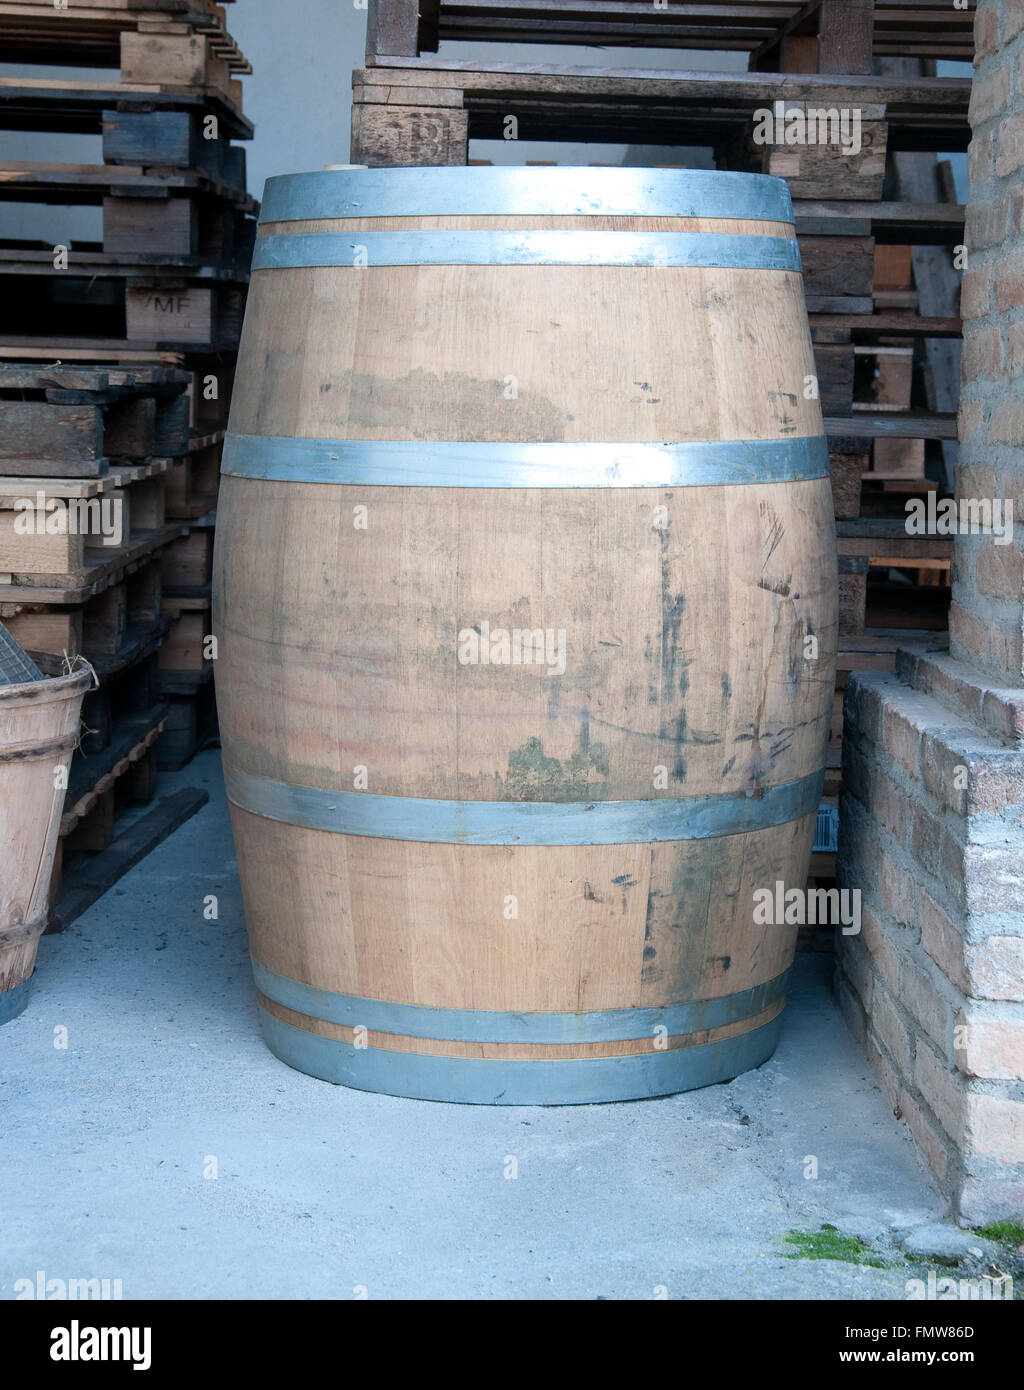 Des tonneaux de bois utilisés pour contenir des vin,Italie Banque D'Images